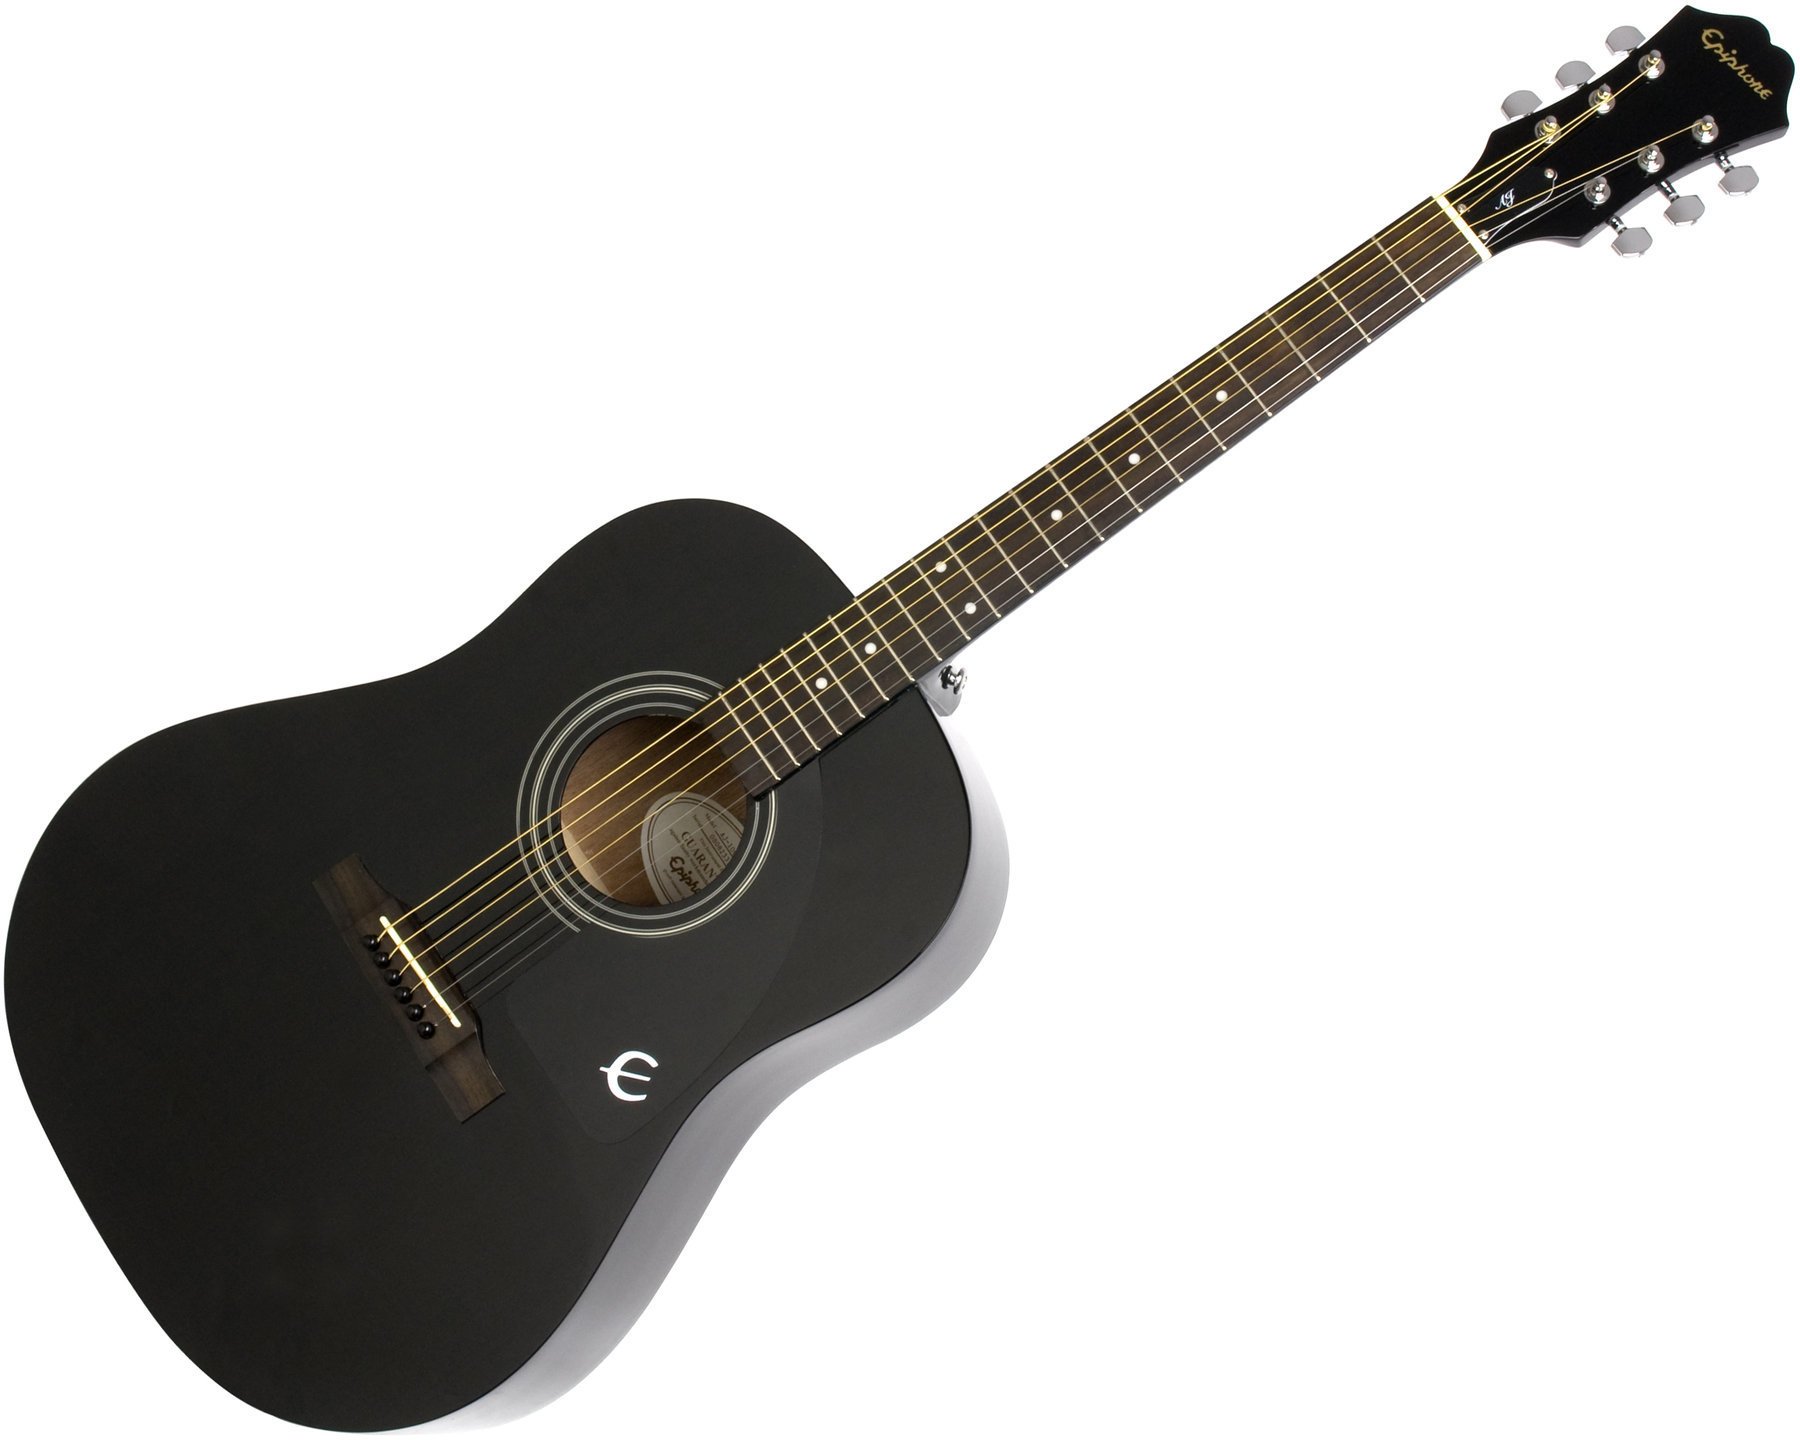 Ακουστική Κιθάρα Epiphone AJ-100 EB